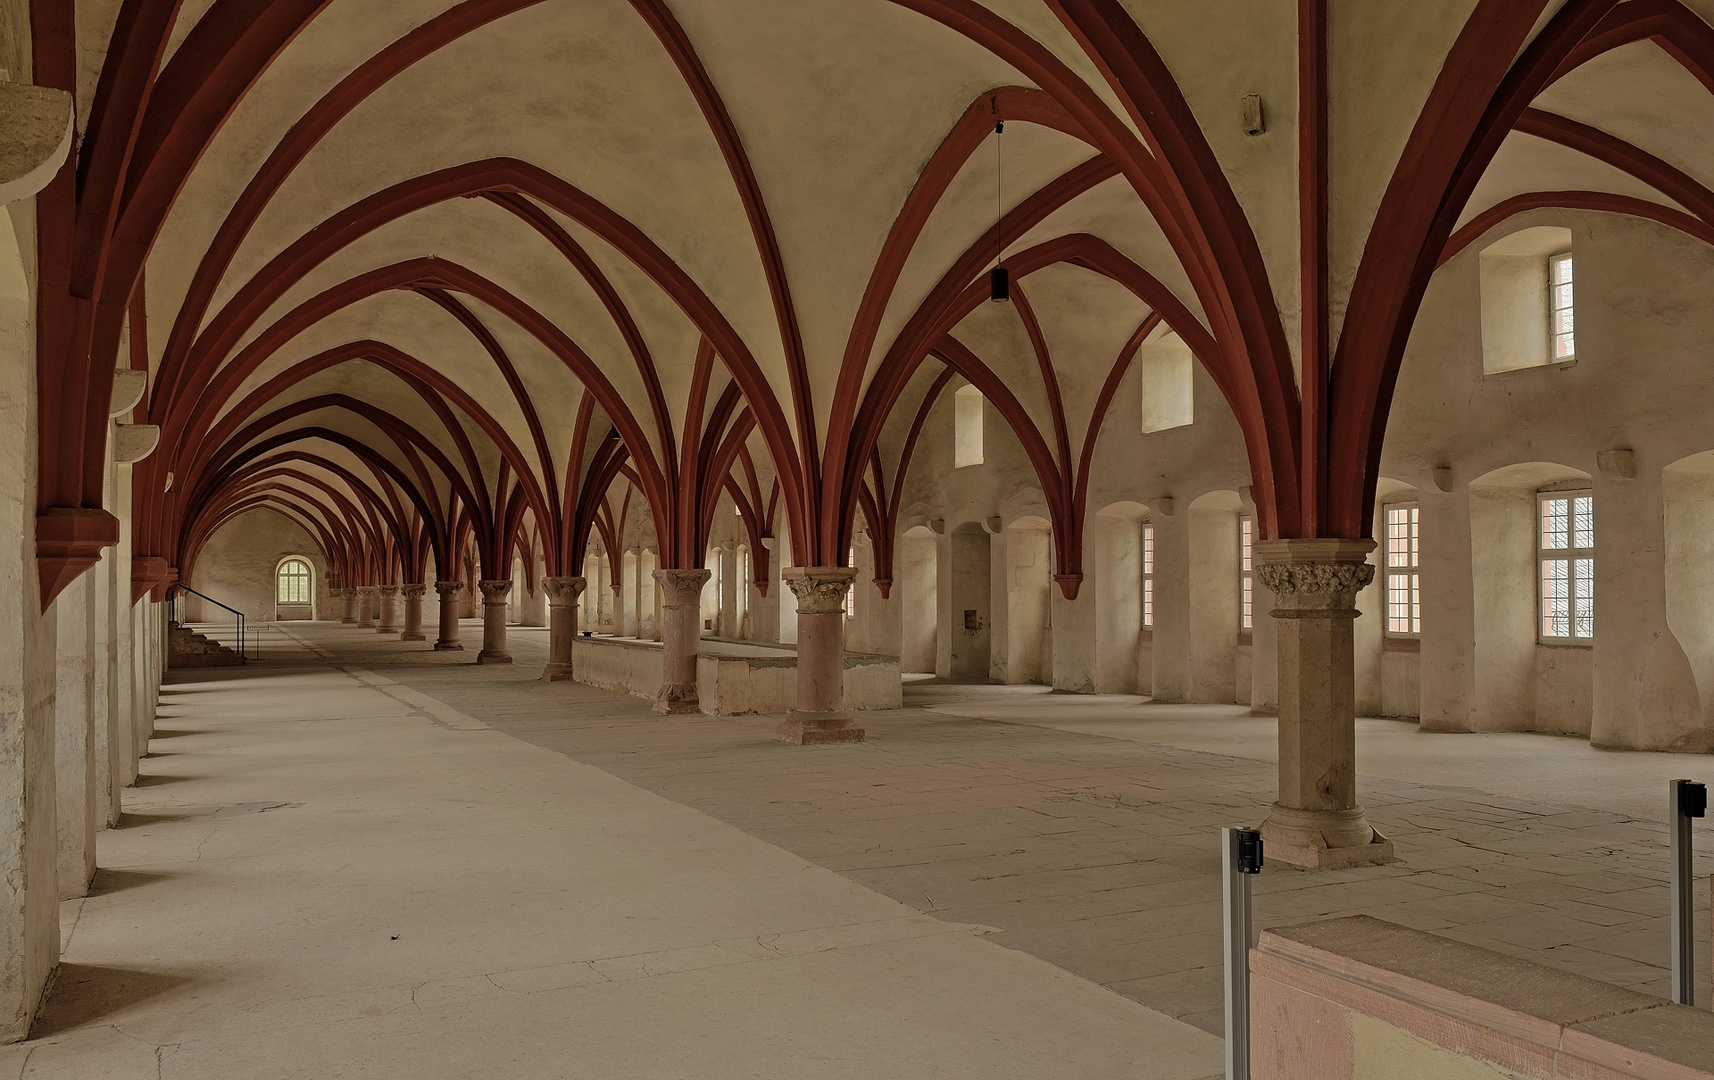  72 m lang ist das Dormitorium, d.h. der Schlafsaal der Mönche im Kloster Eberbach,.. 